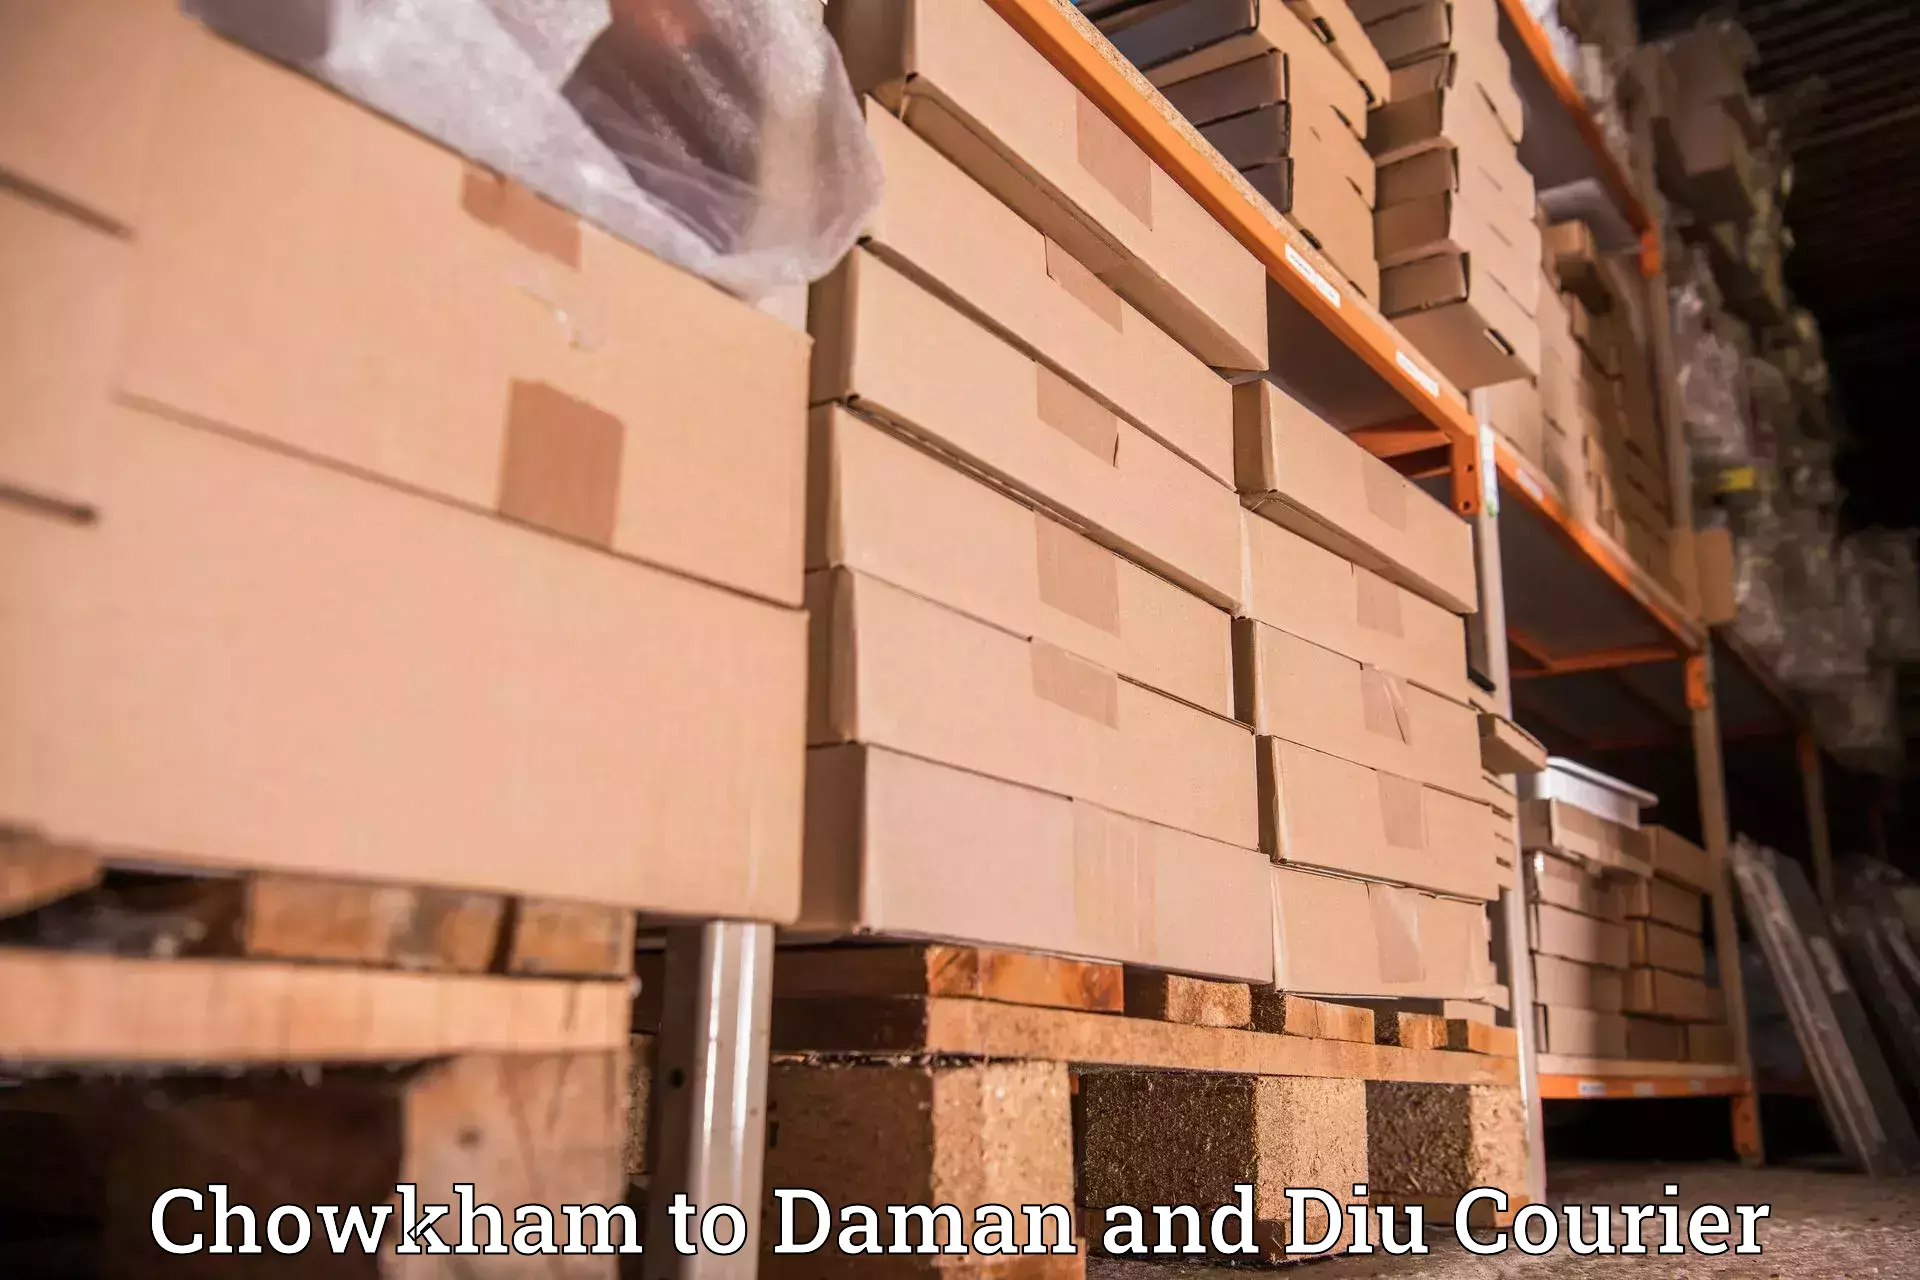 Efficient parcel service Chowkham to Daman